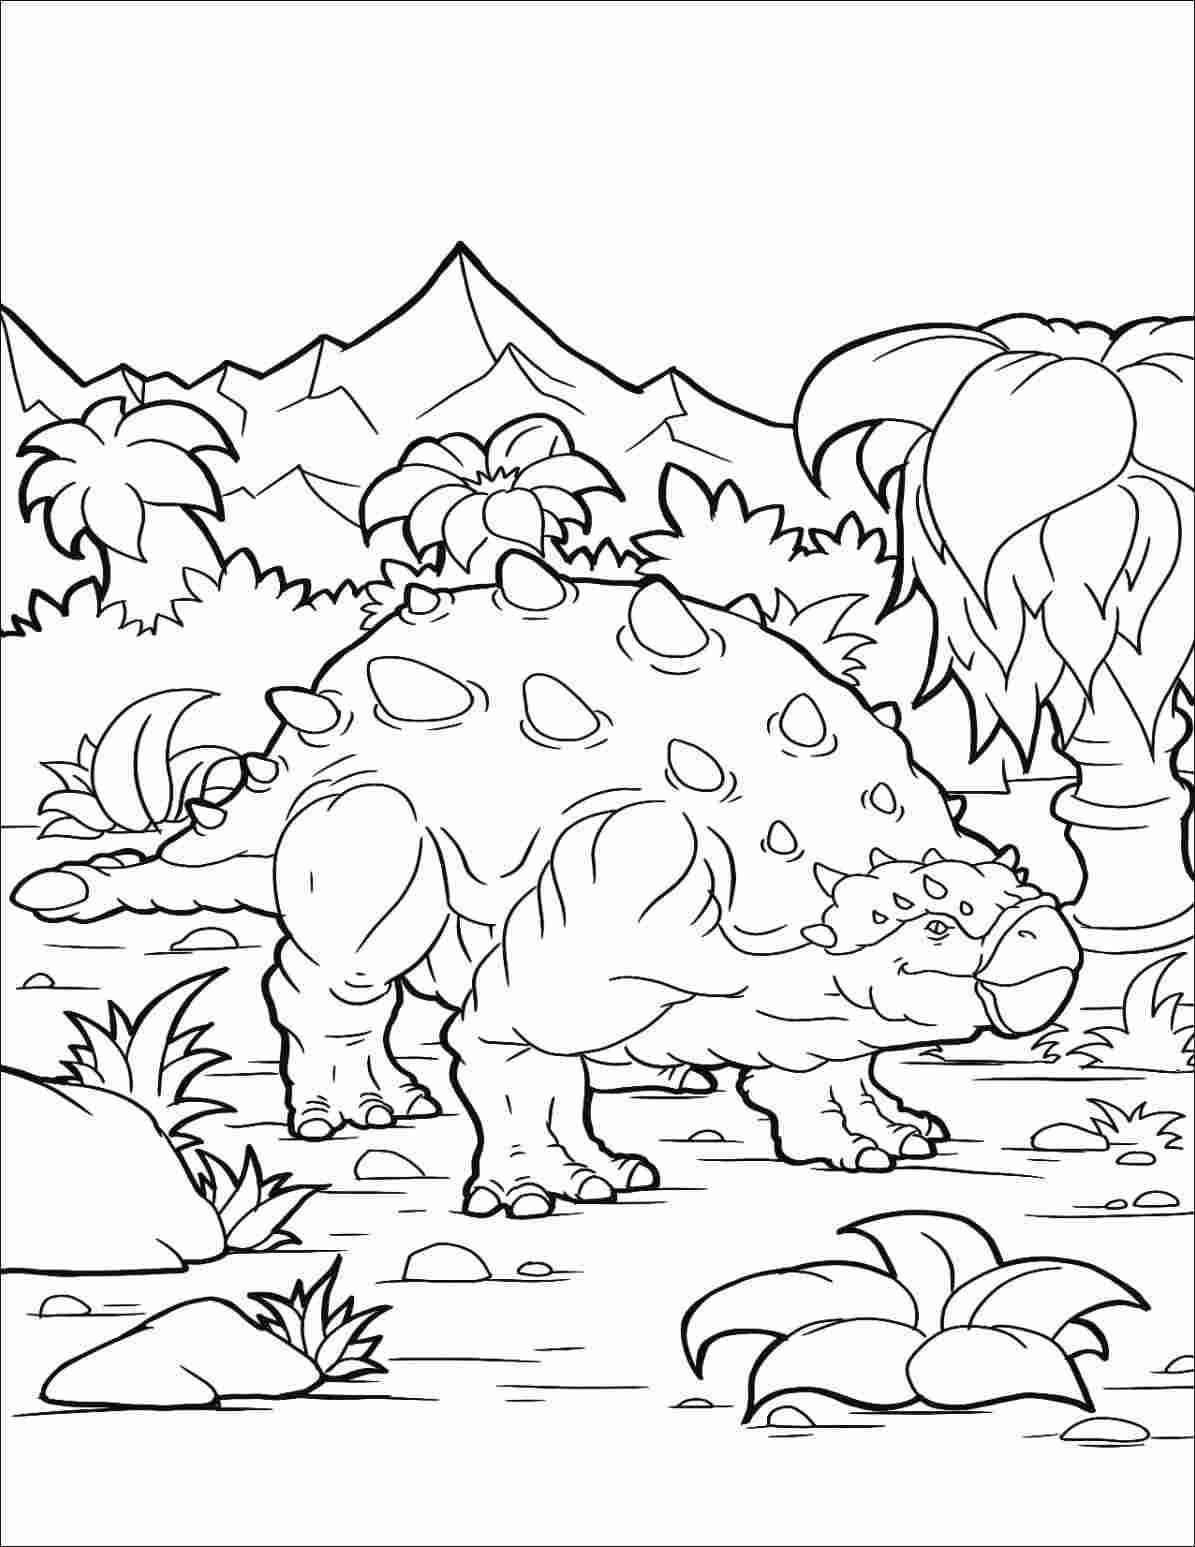 Раскраска Анкилозавр с рогами на спине